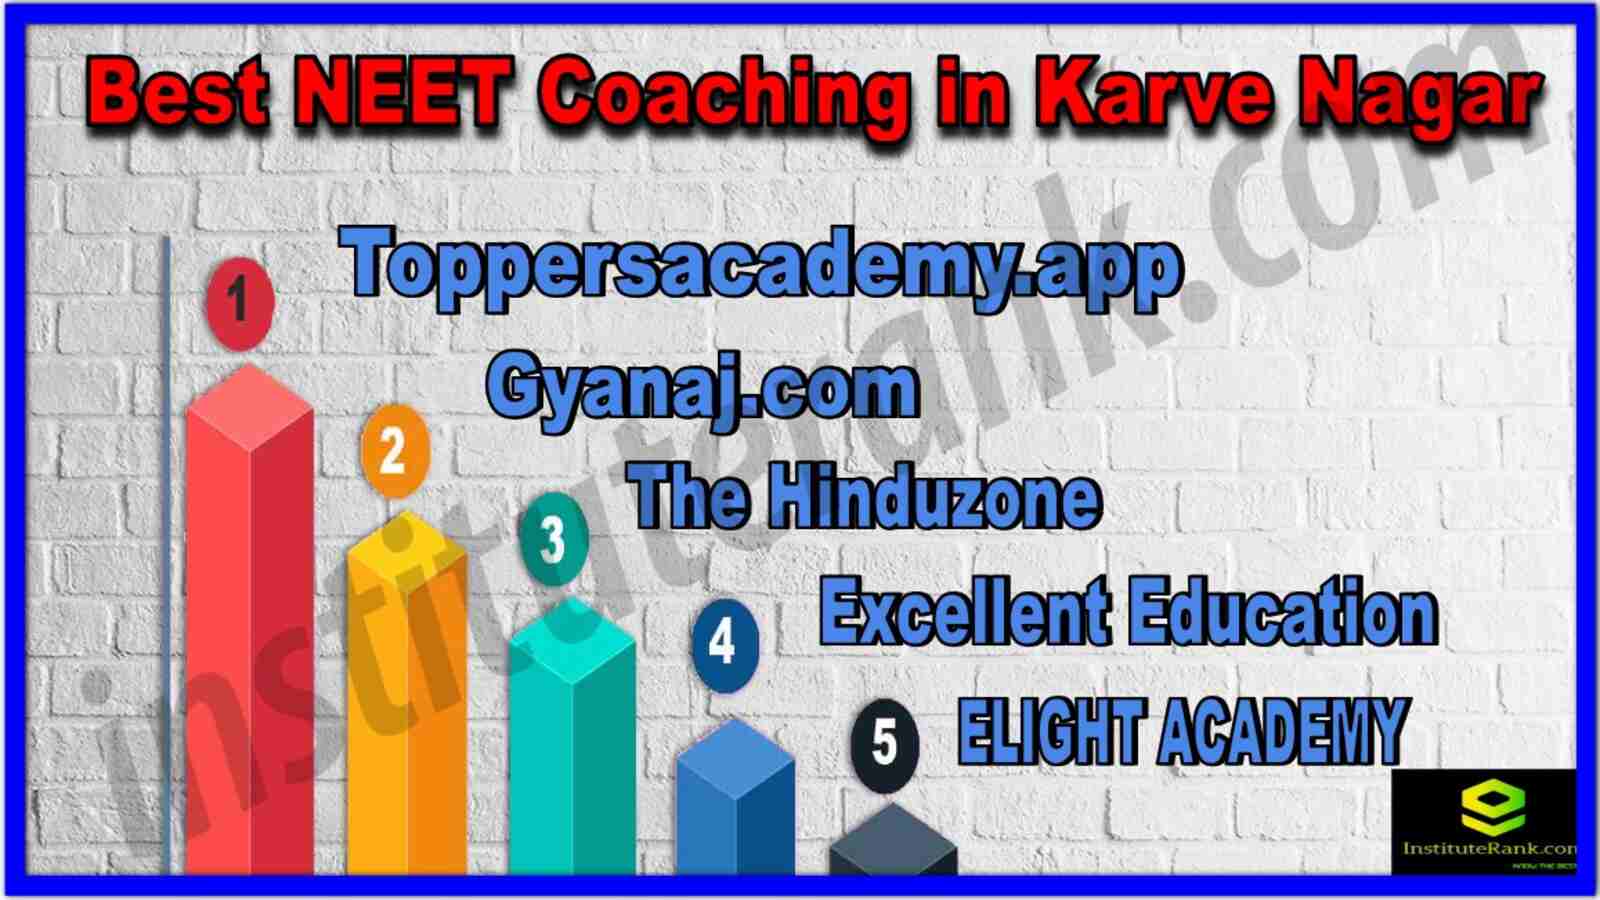 Best NEET Coaching in Karve Nagar